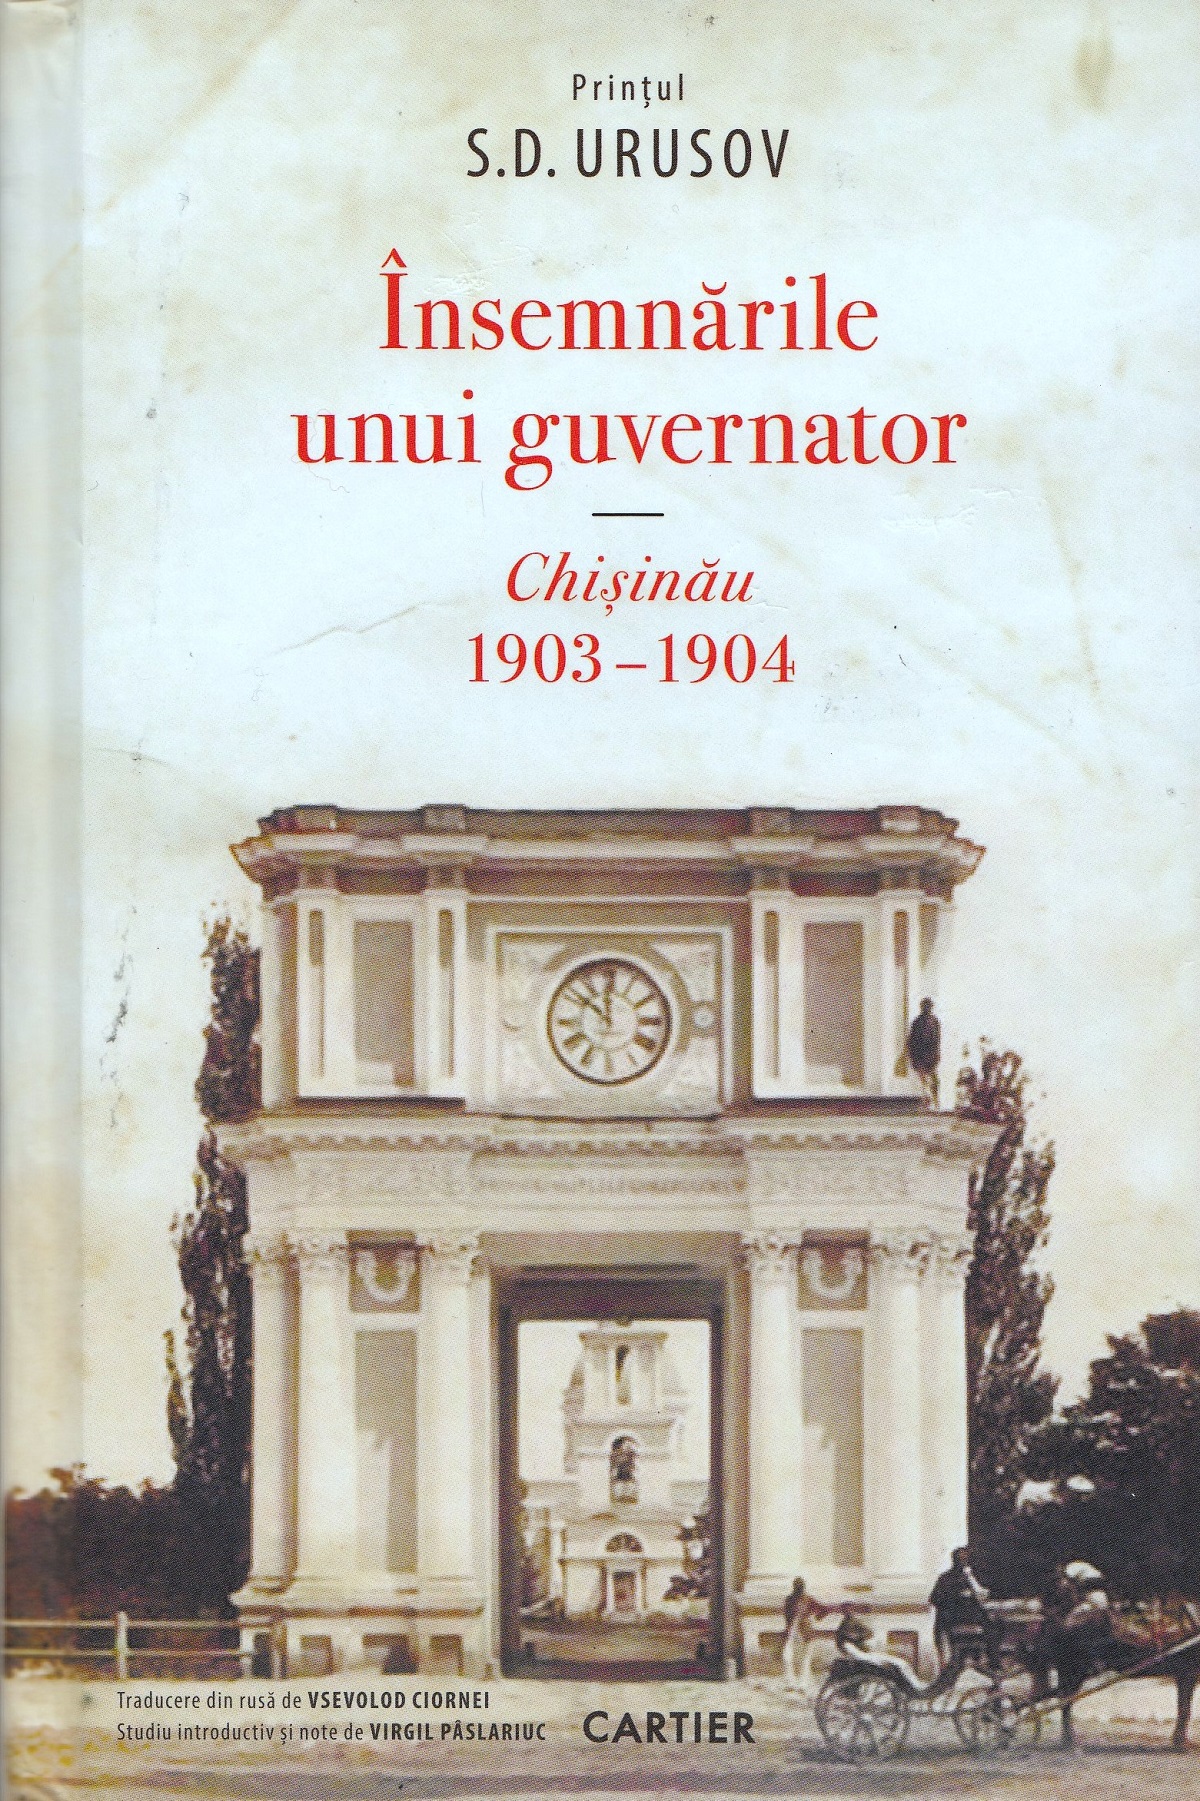 Insemnarile unui guvernator. Chisinau 1903-1904 - Printul S.D. Urusov